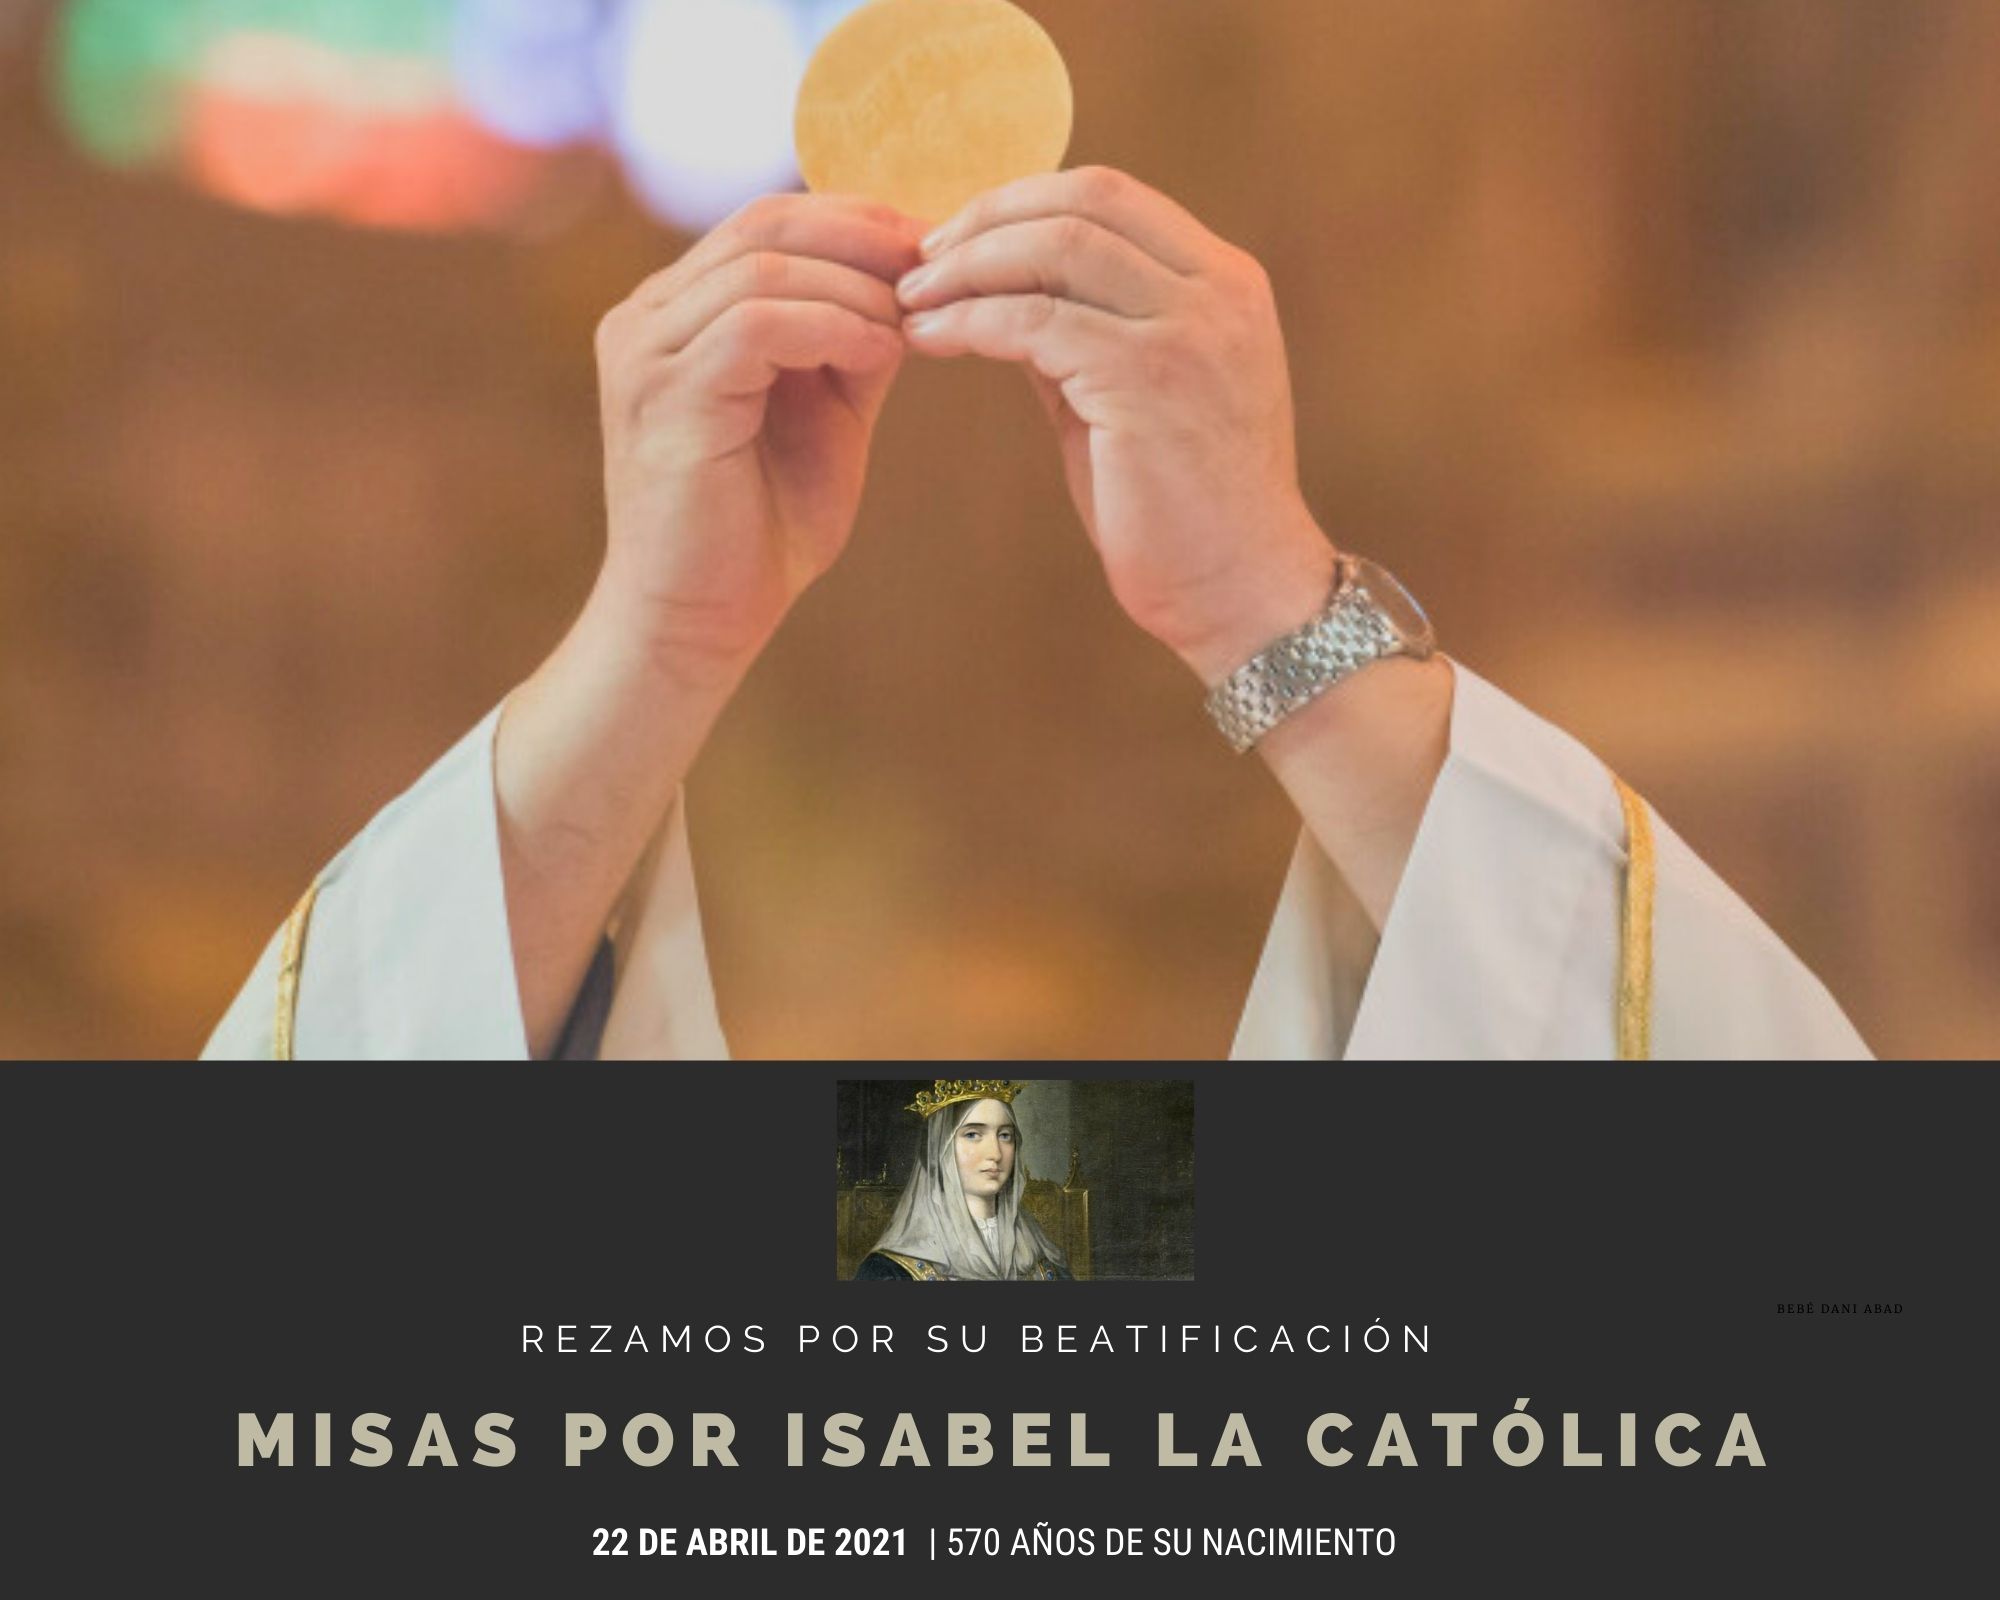 Más de 80 misas por Isabel la Católica por toda España e Hispanoamérica